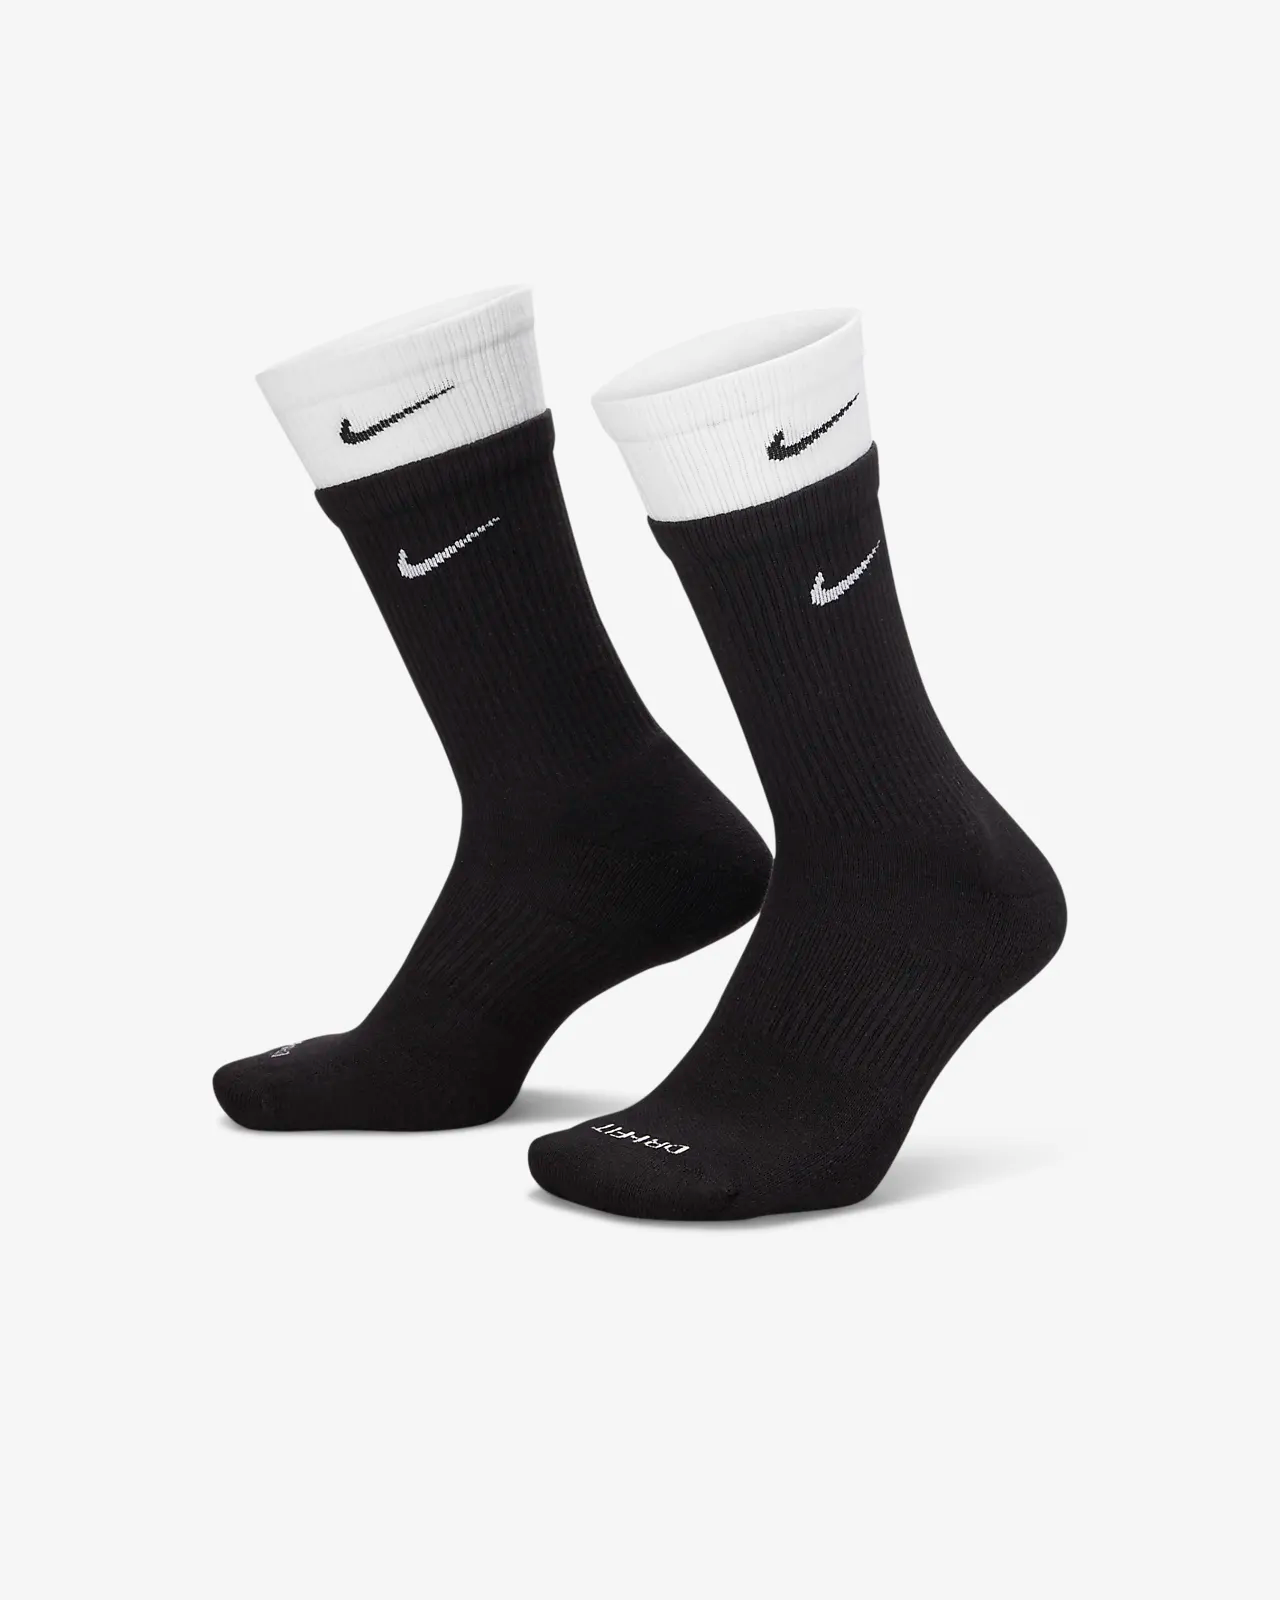 Nike Everyday Plus Cushioned Training Crew socks Black/White